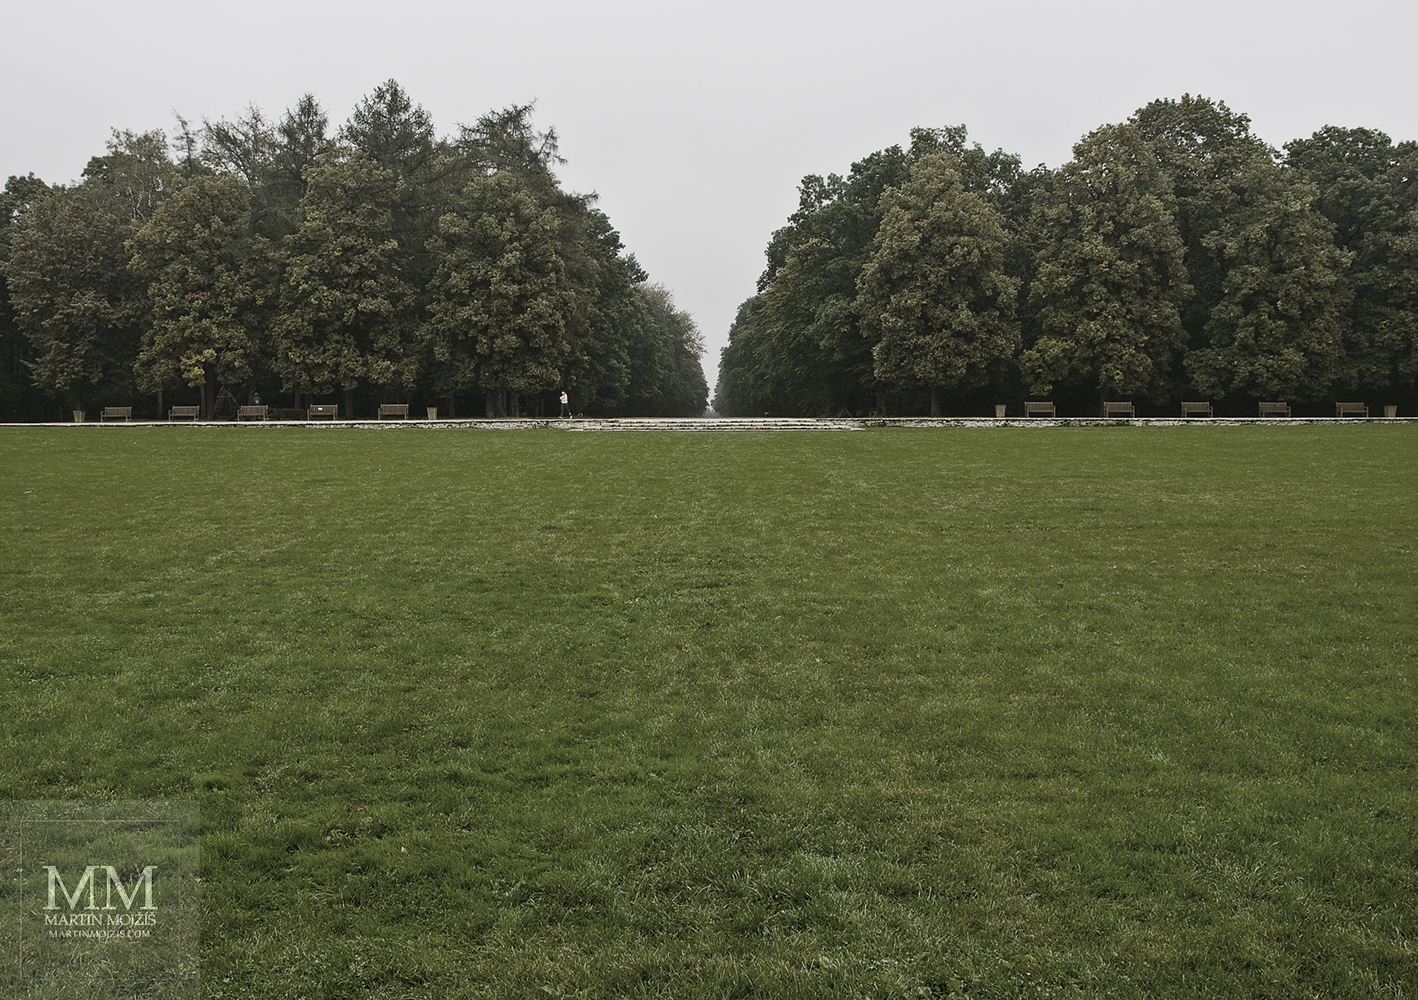 Městský park, travnatá louka, v pozadí stromy. Umělecká fotografie Martina Mojžíše s názvem TICHÉ RÁNO V MĚSTSKÉM PARKU.